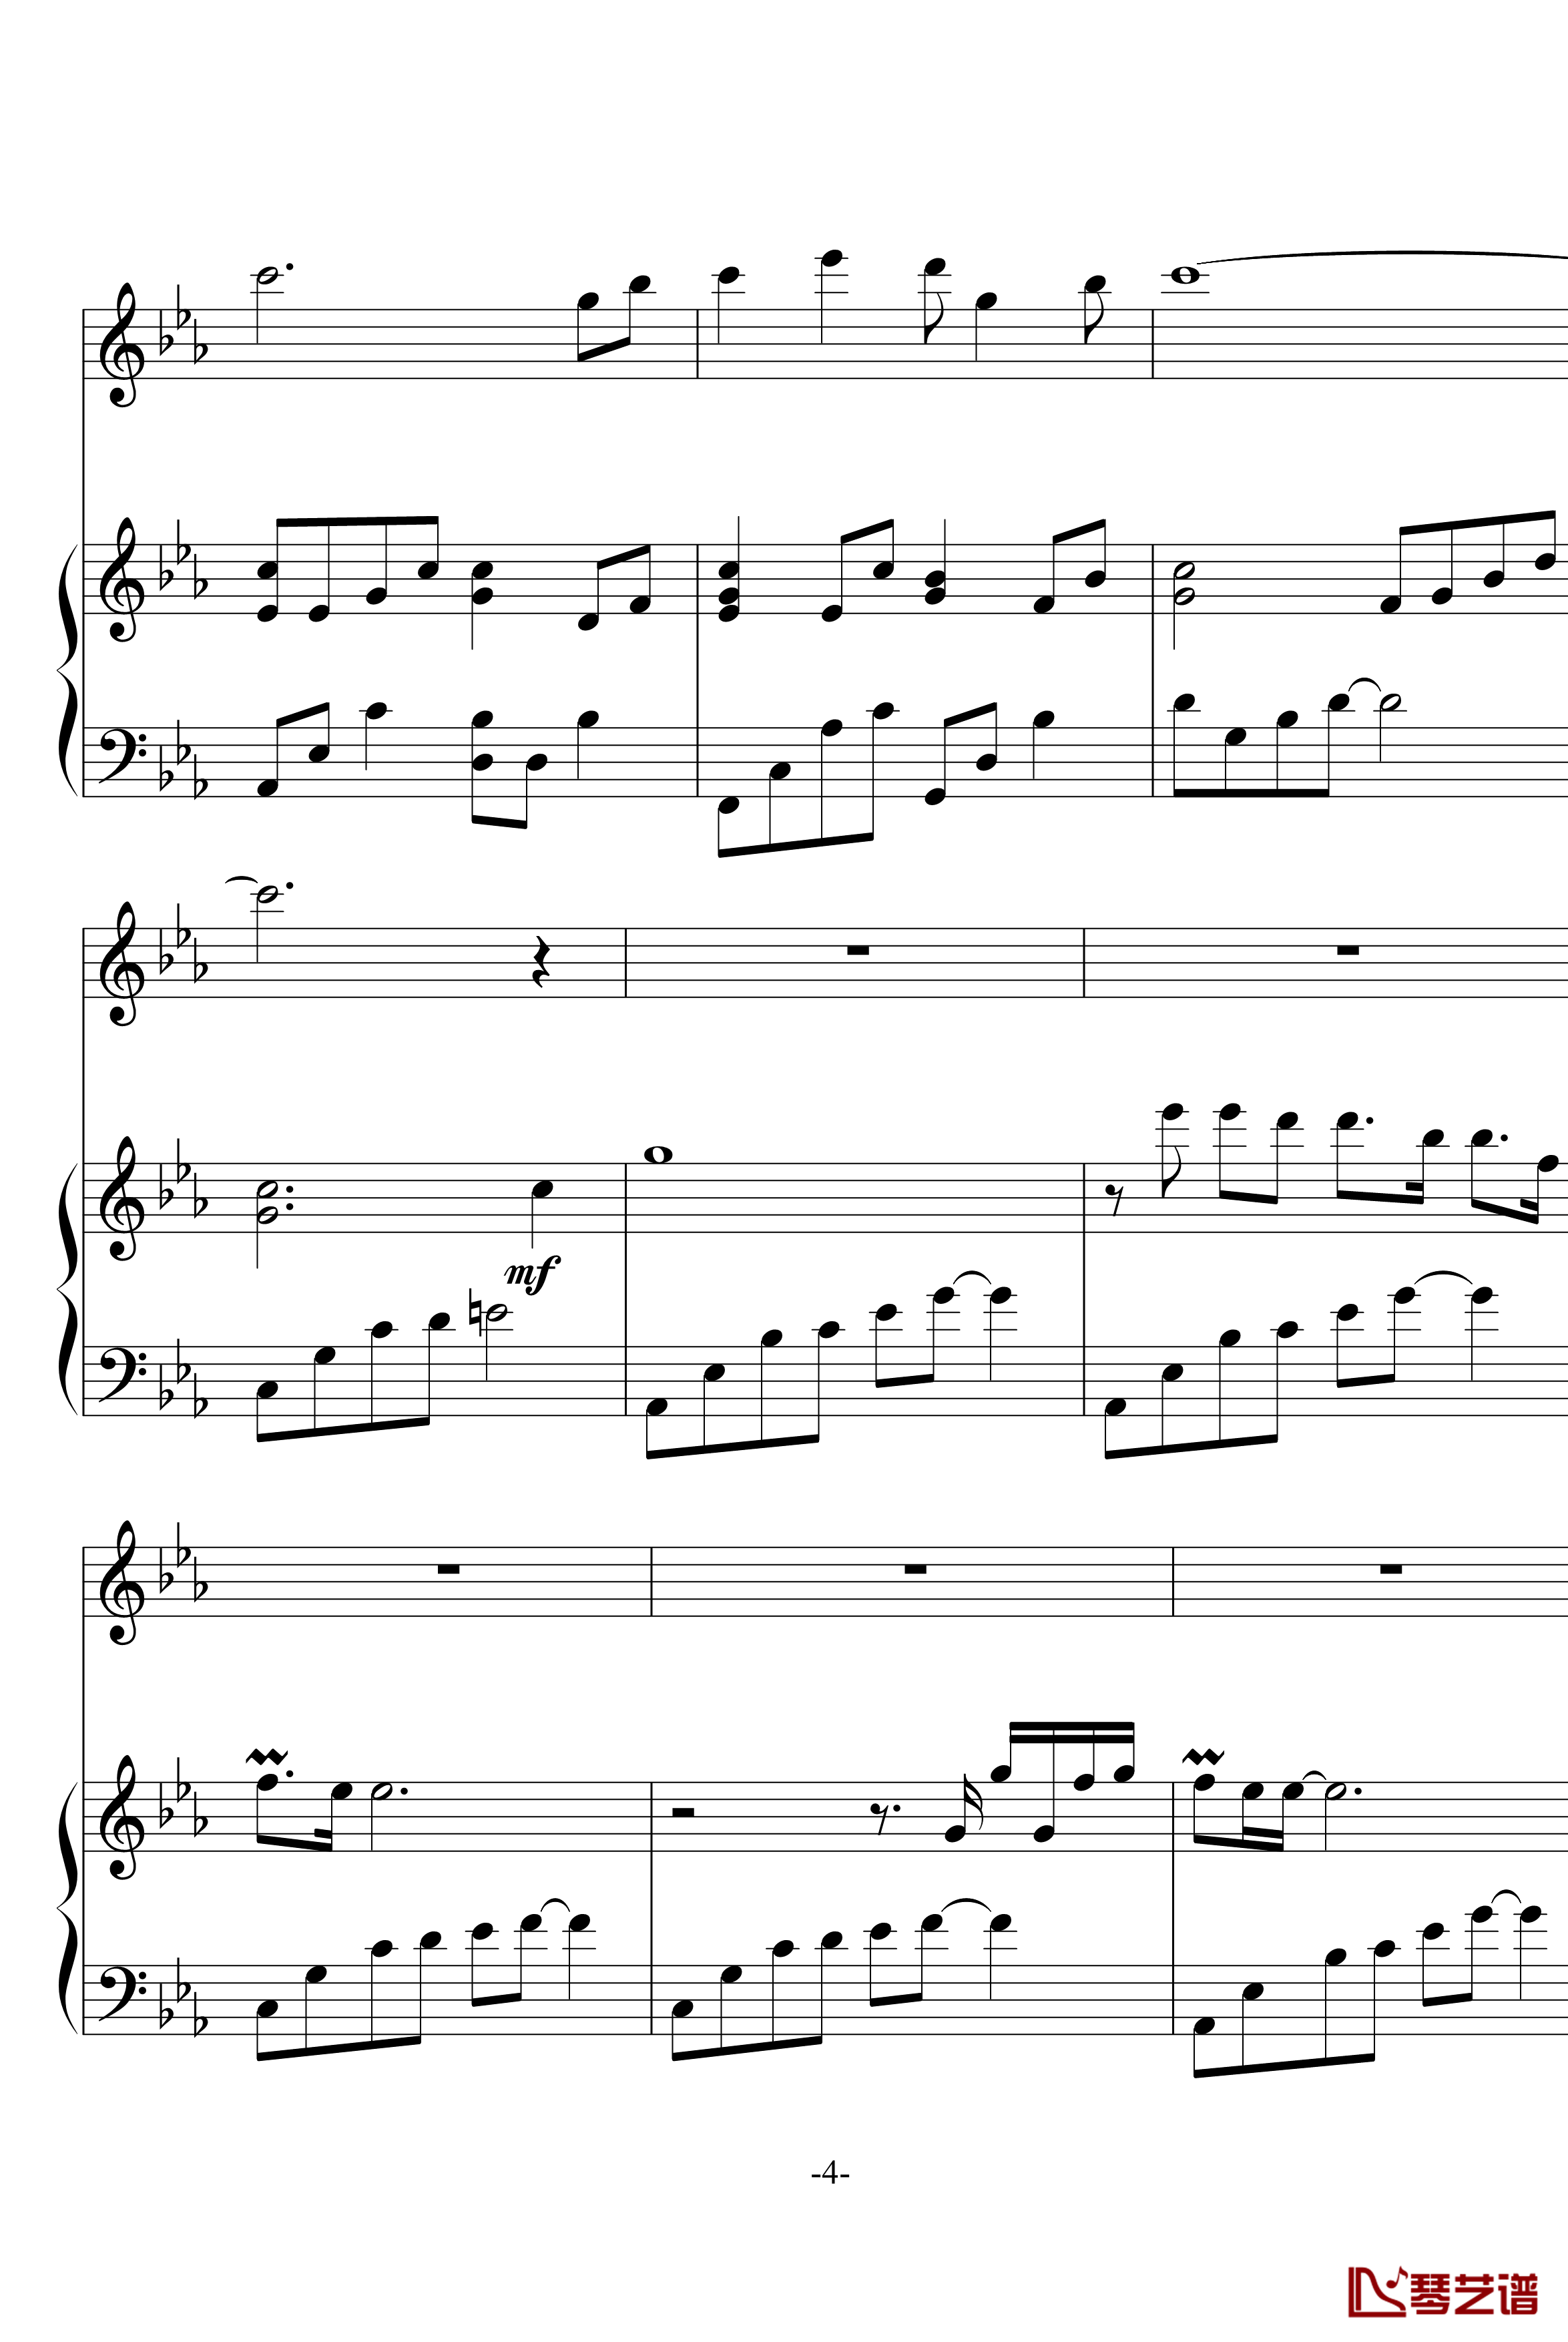 幽灵公主笛子与钢琴钢琴谱-OST-久石让4